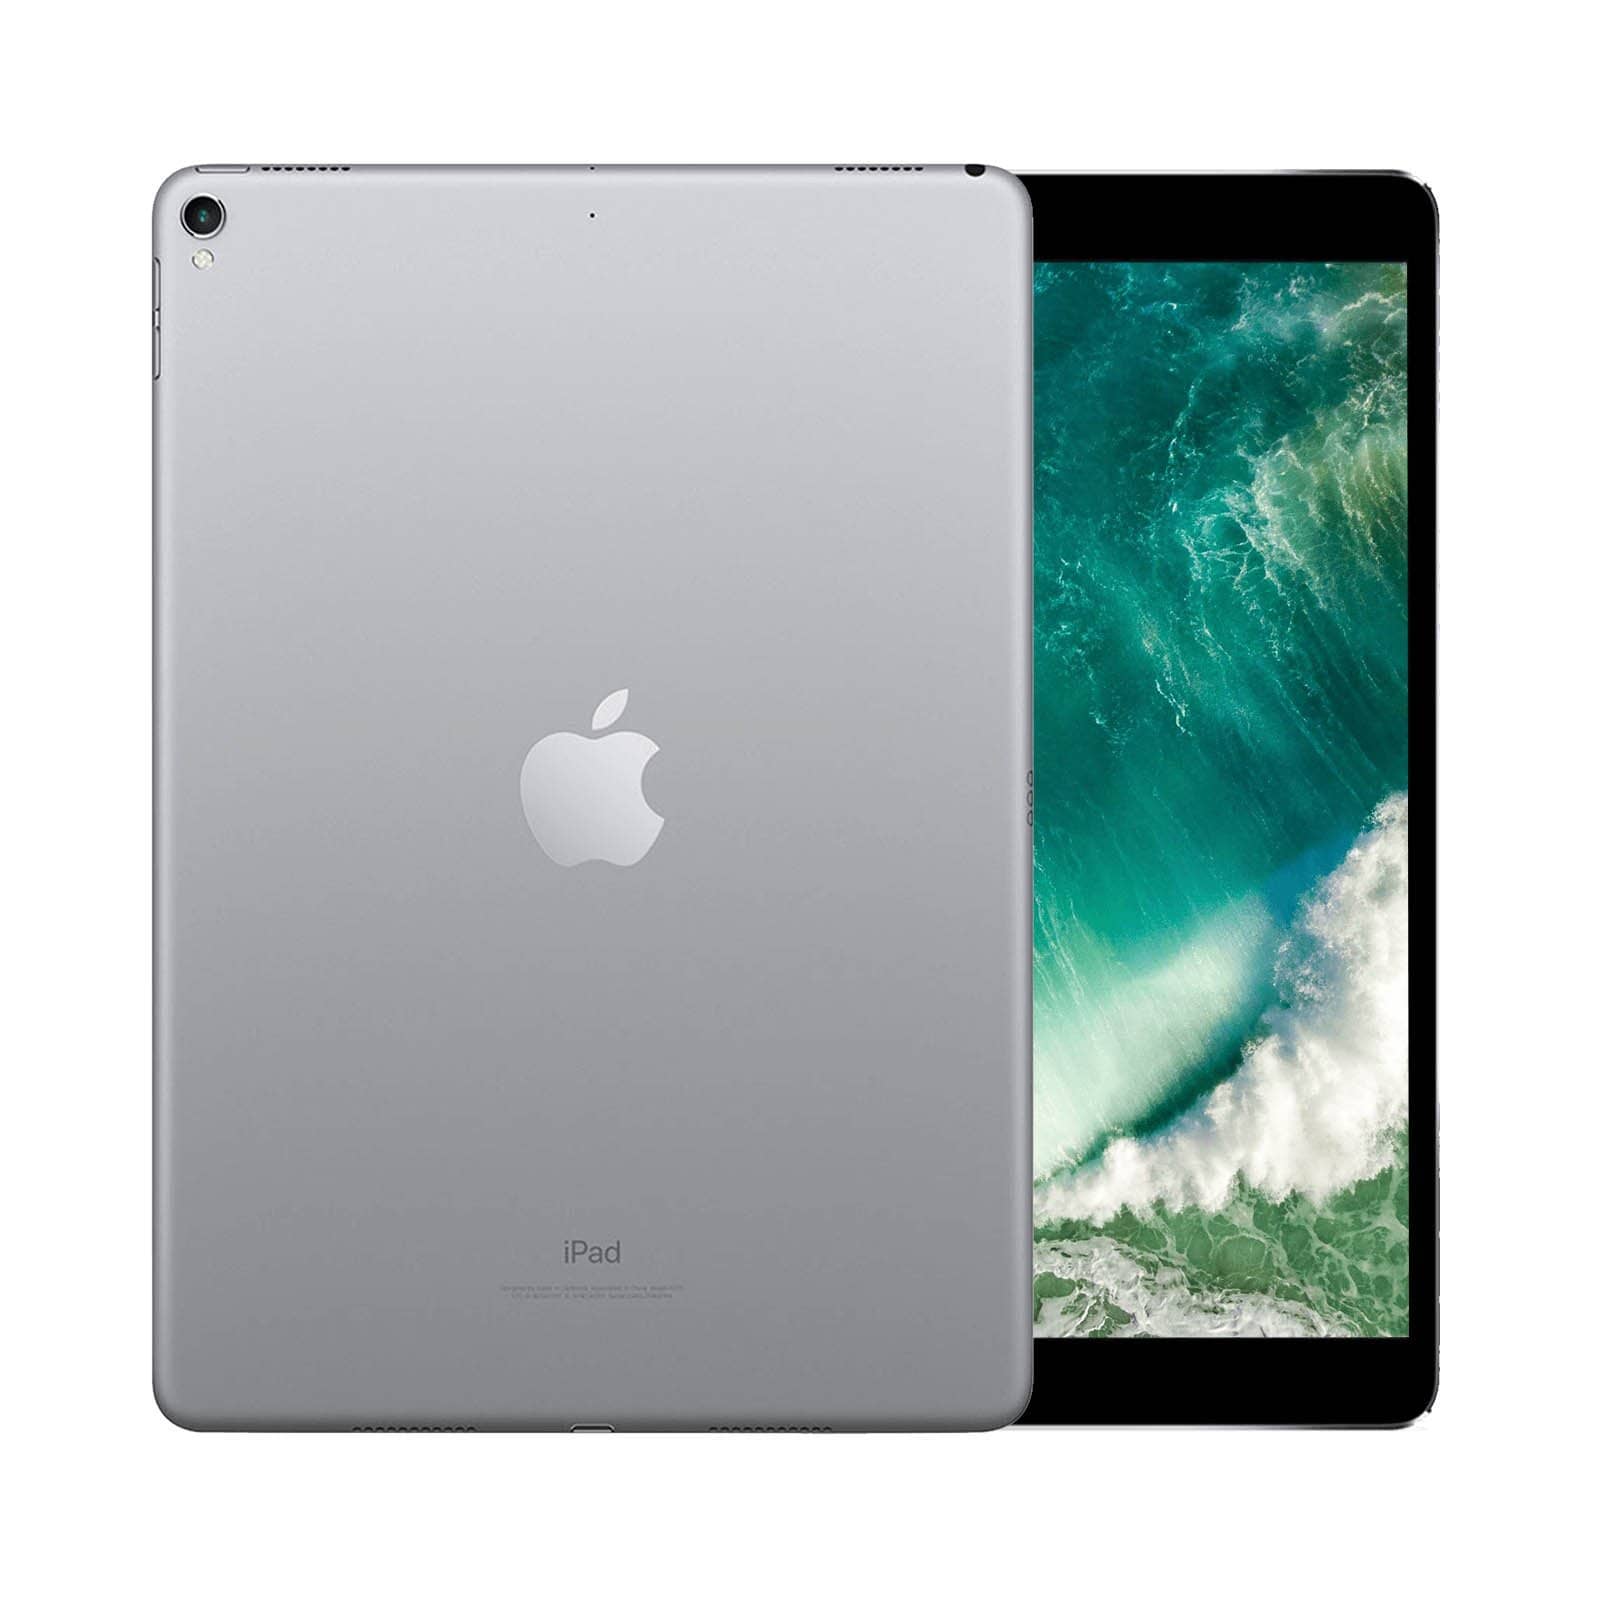 iPad Pro 10.5 Inch 256GB Space Grey Very Good - WiFi 256GB Space Grey Very Good